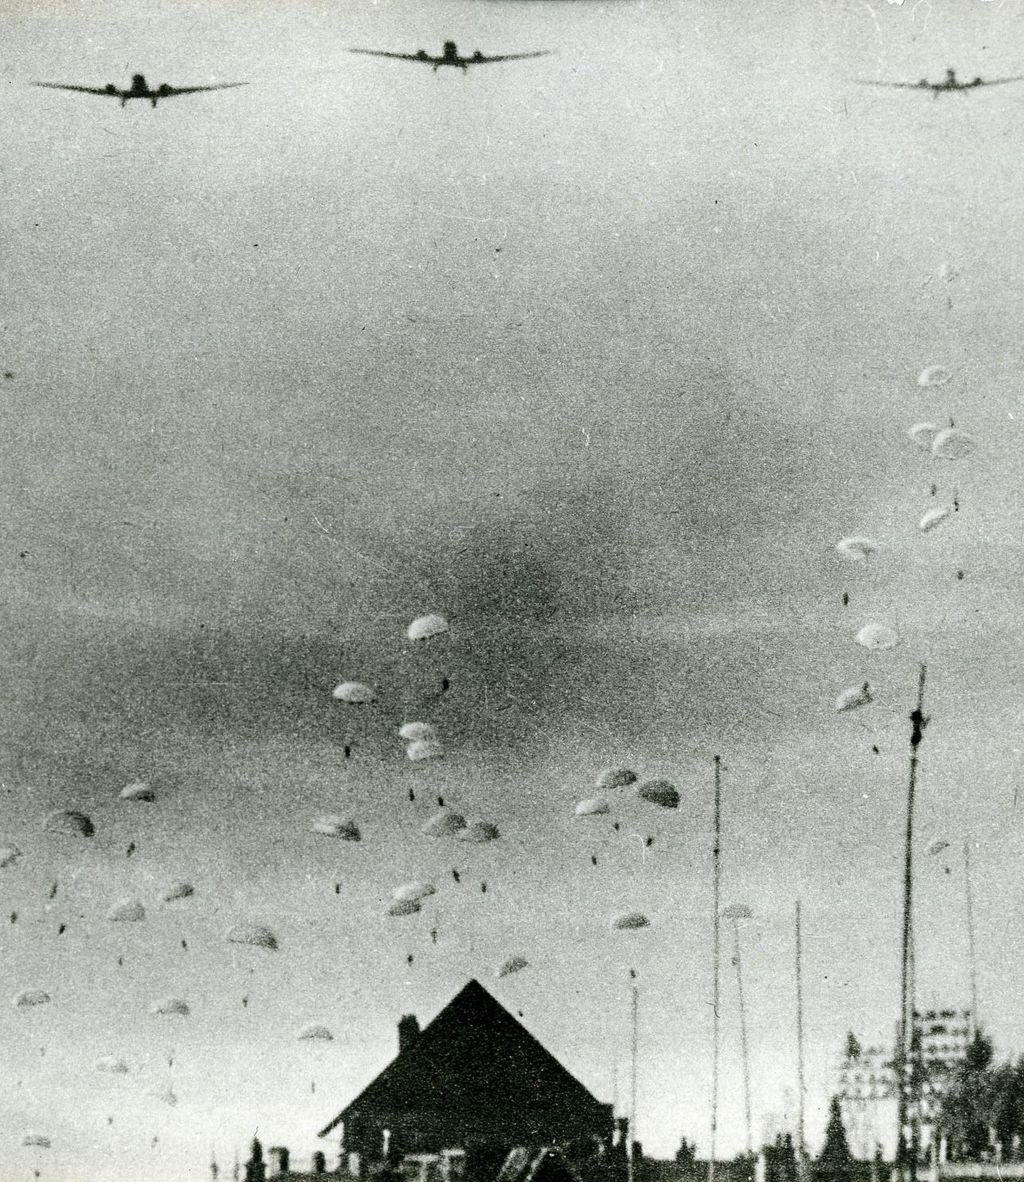 Exponat: Foto: Absprung deutscher Fallschirmjäger bei Rotterdam, 1940